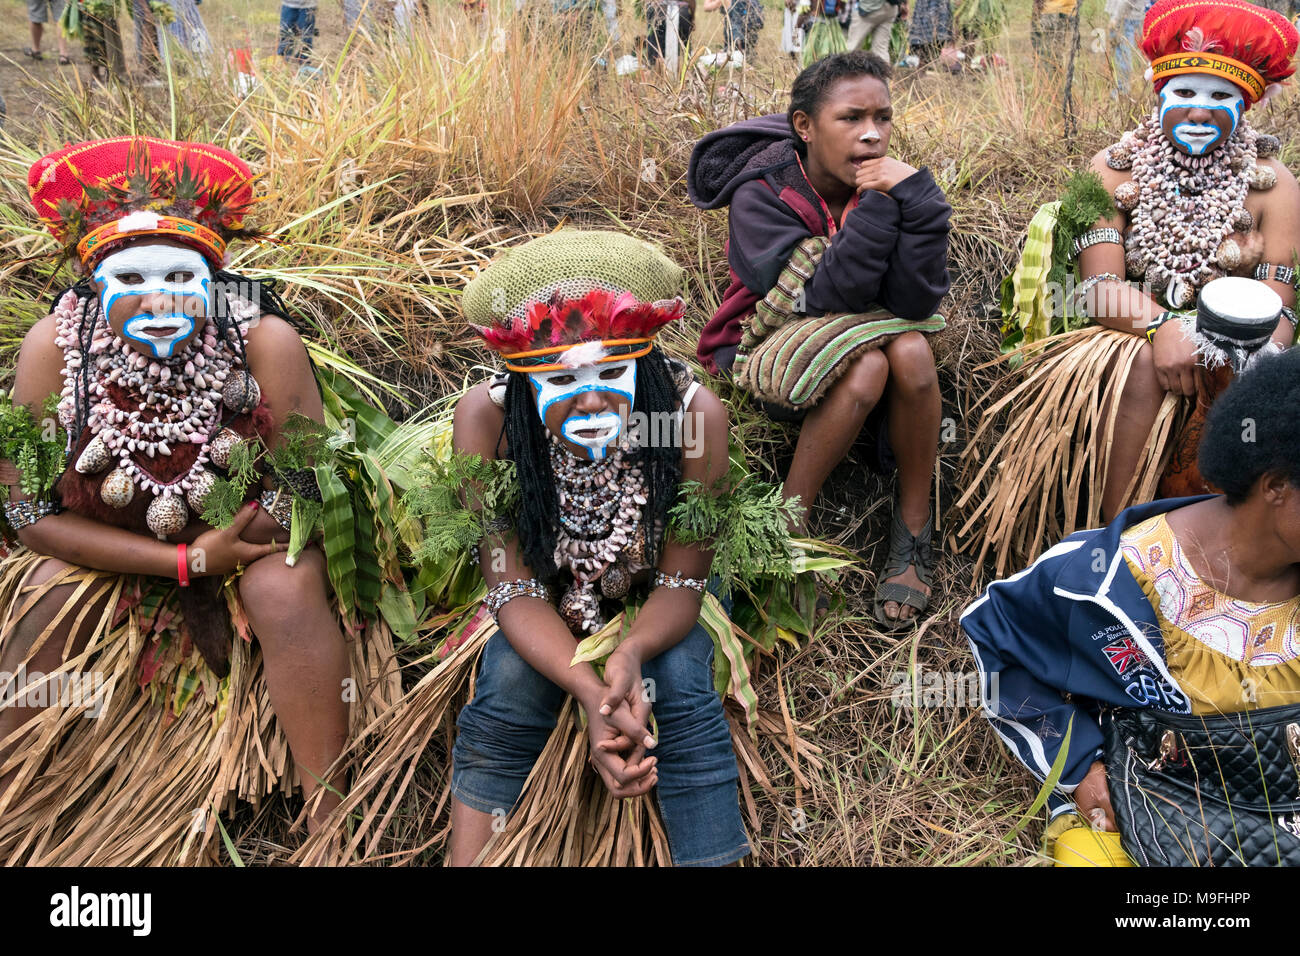 Les femmes tribales attente pour effectuer au Mount Hagen Spectacle culturel dans les hautes terres de l'Ouest, la Papouasie-Nouvelle-Guinée. Banque D'Images